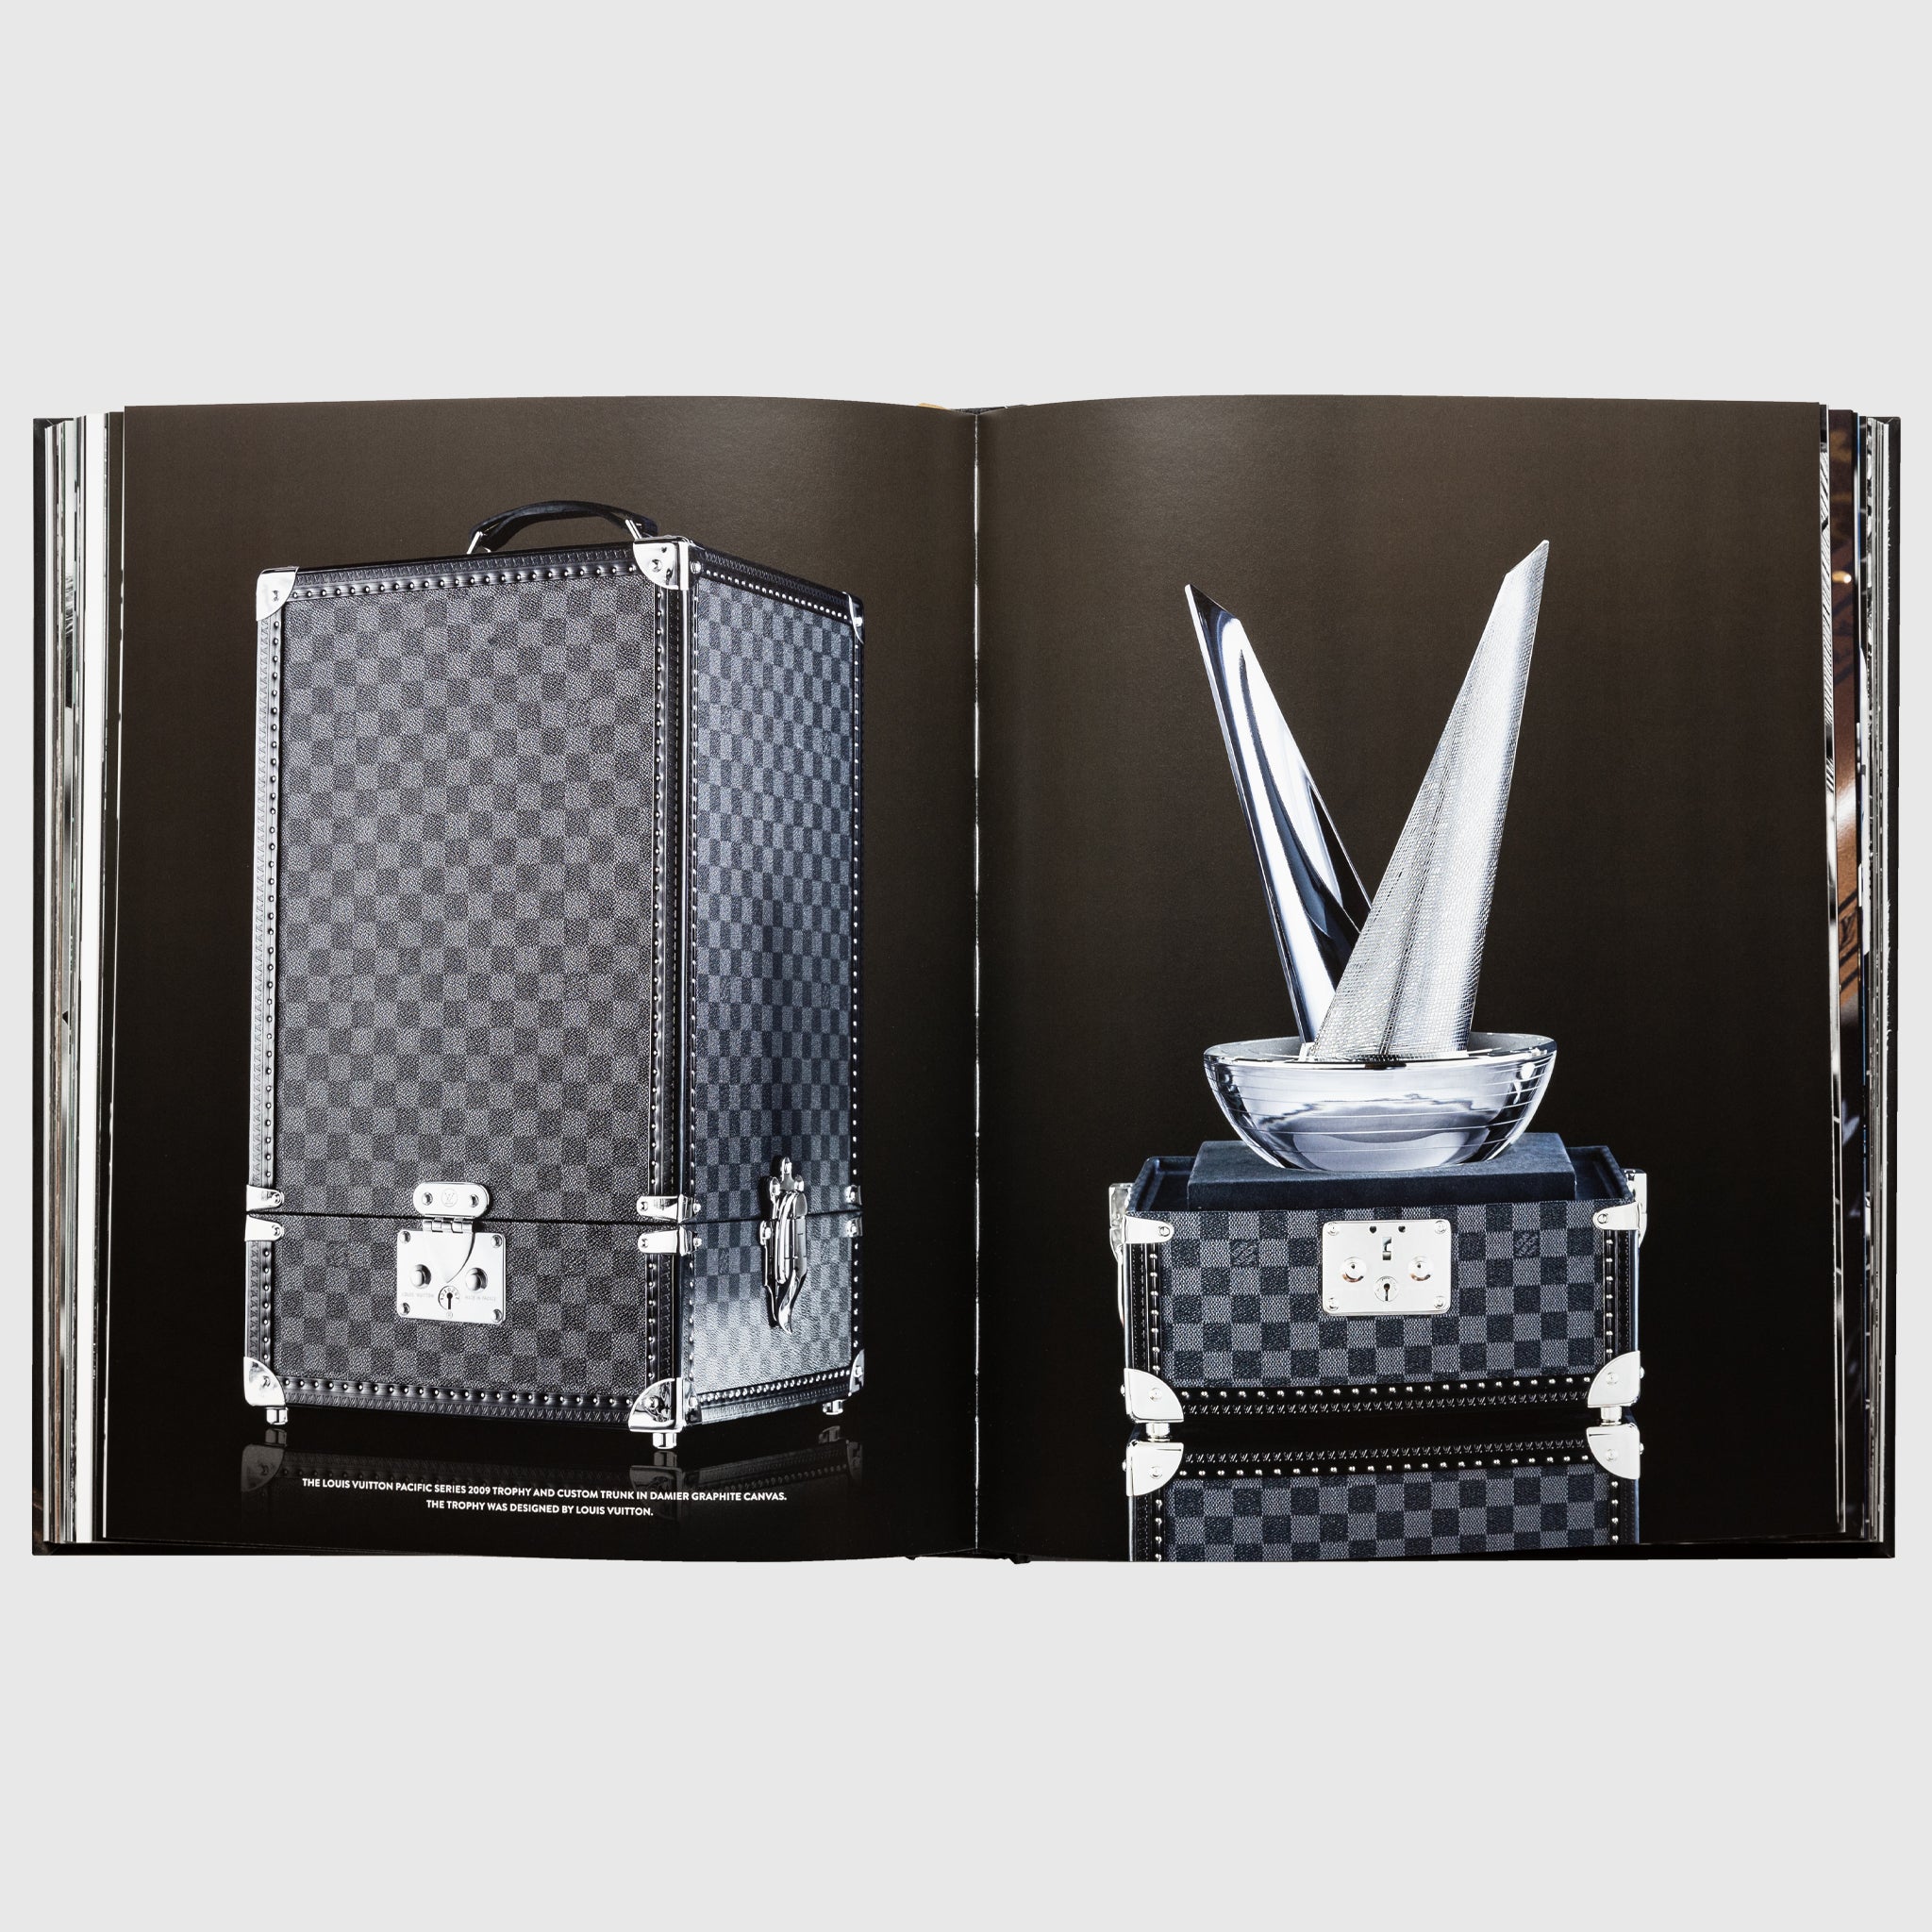 Louis Vuitton: Trophy Trunks